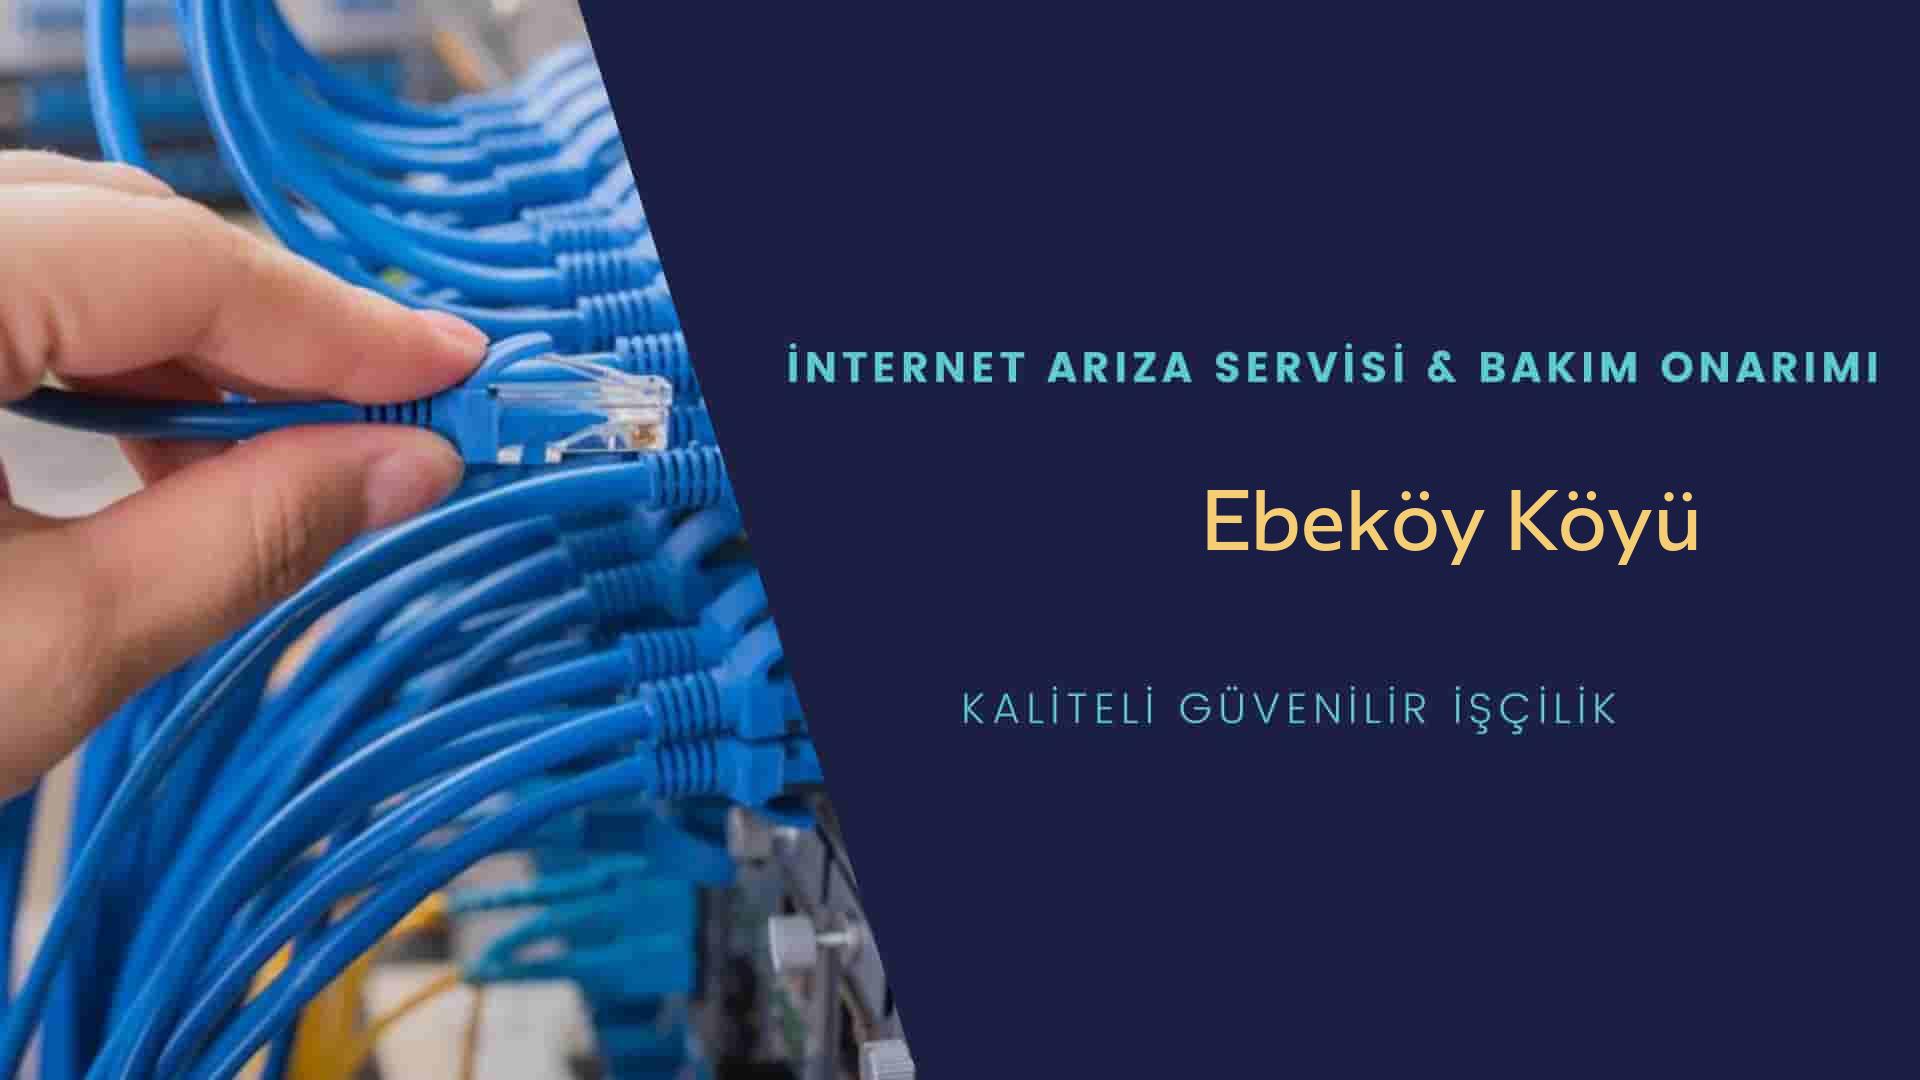 Ebeköy Köyü internet kablosu çekimi yapan yerler veya elektrikçiler mi? arıyorsunuz doğru yerdesiniz o zaman sizlere 7/24 yardımcı olacak profesyonel ustalarımız bir telefon kadar yakındır size.